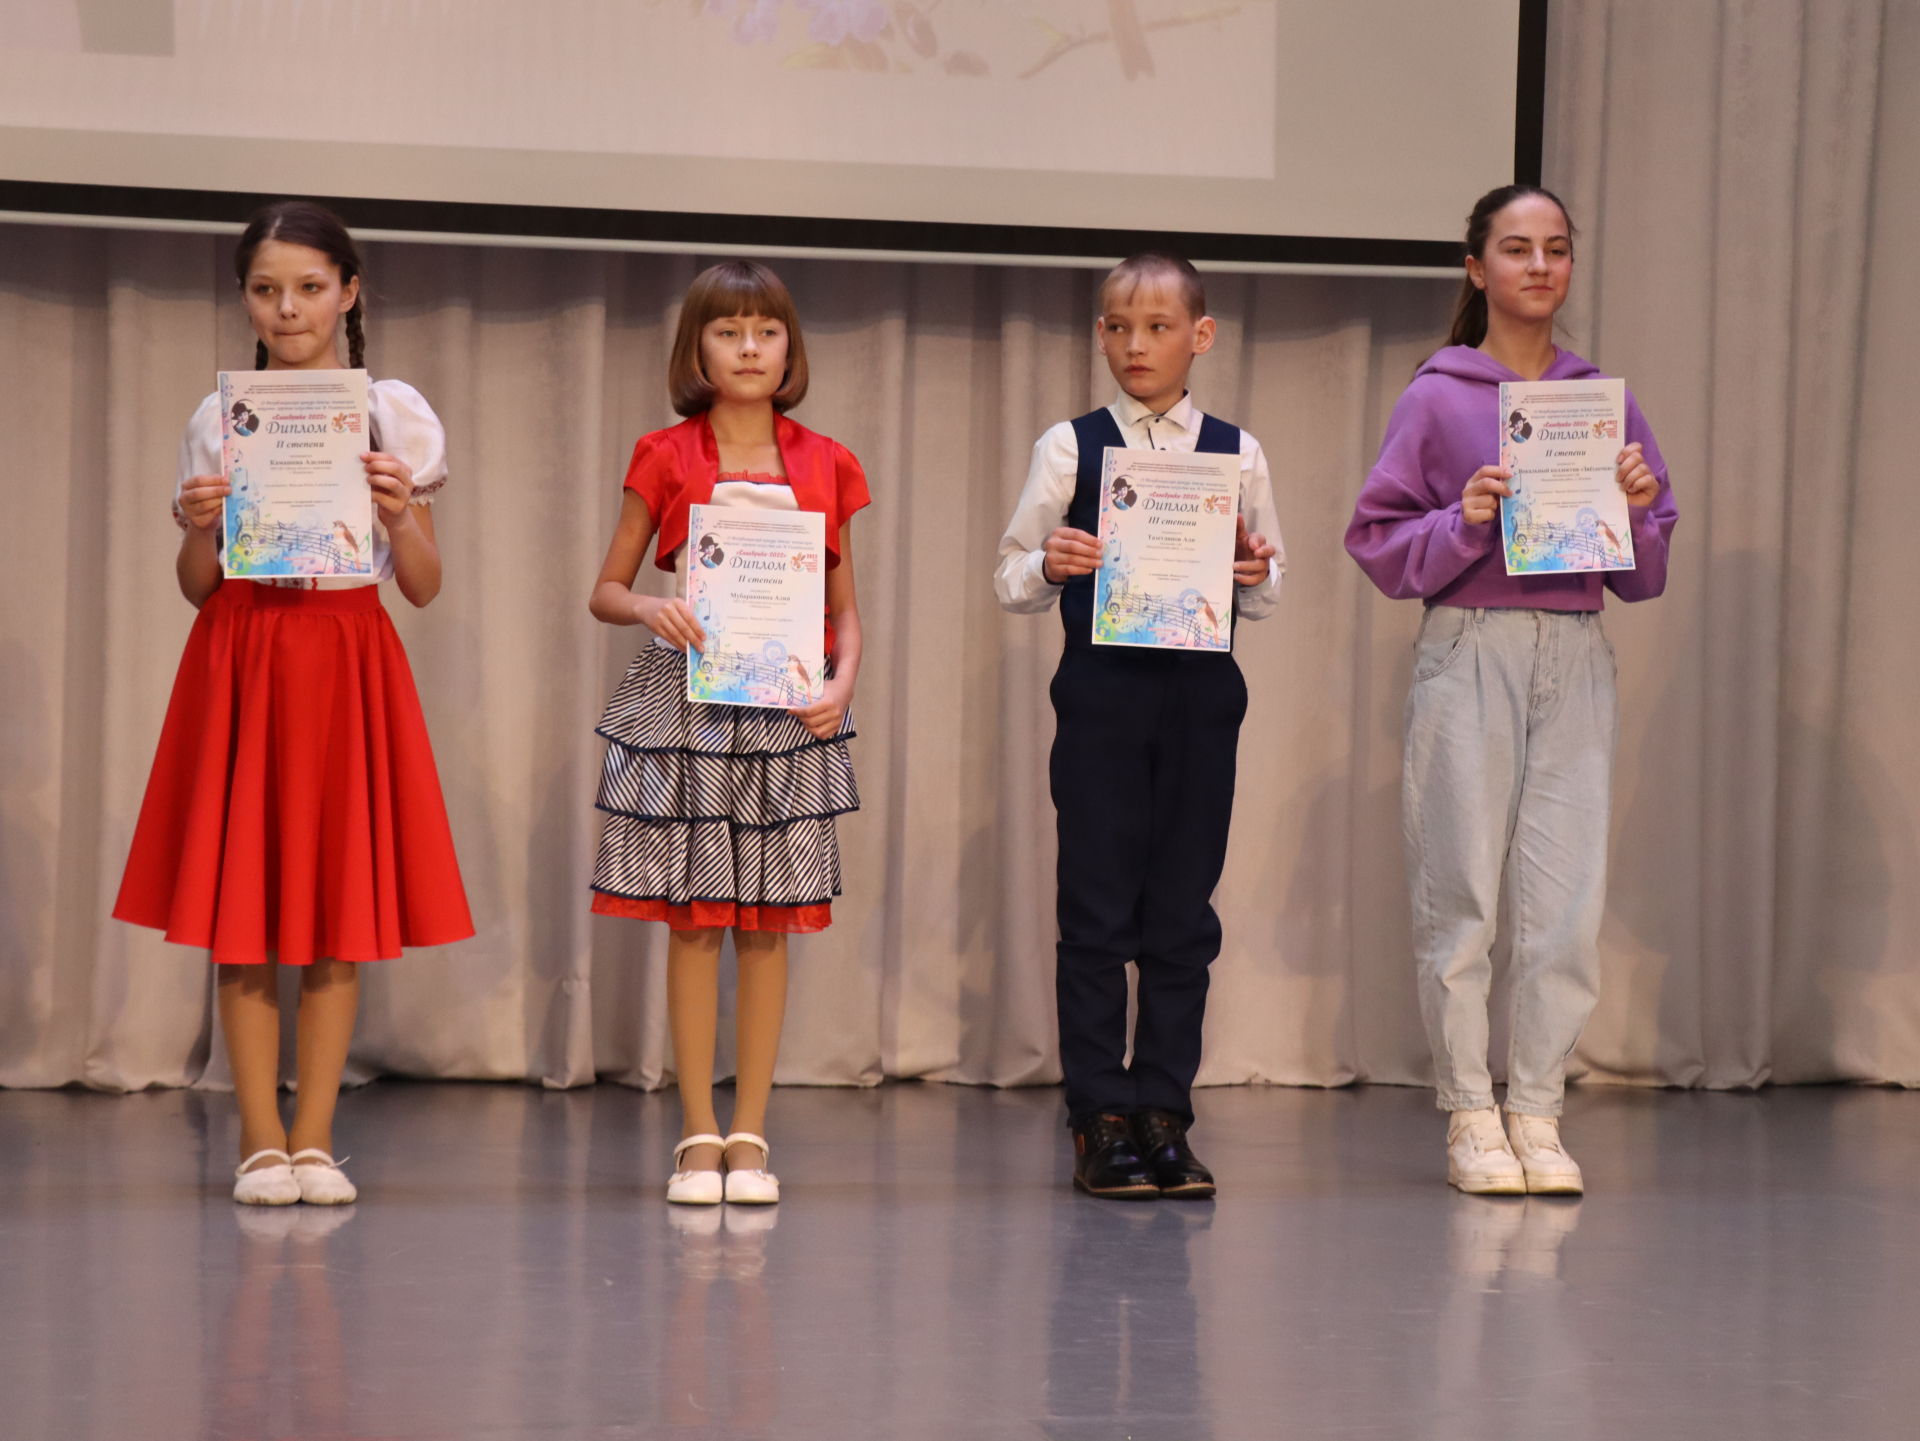 Второй республиканский детско-юношеского вокально-хоровой конкурс «Соловушка-2022» имени Вафиры Гиззатуллиной